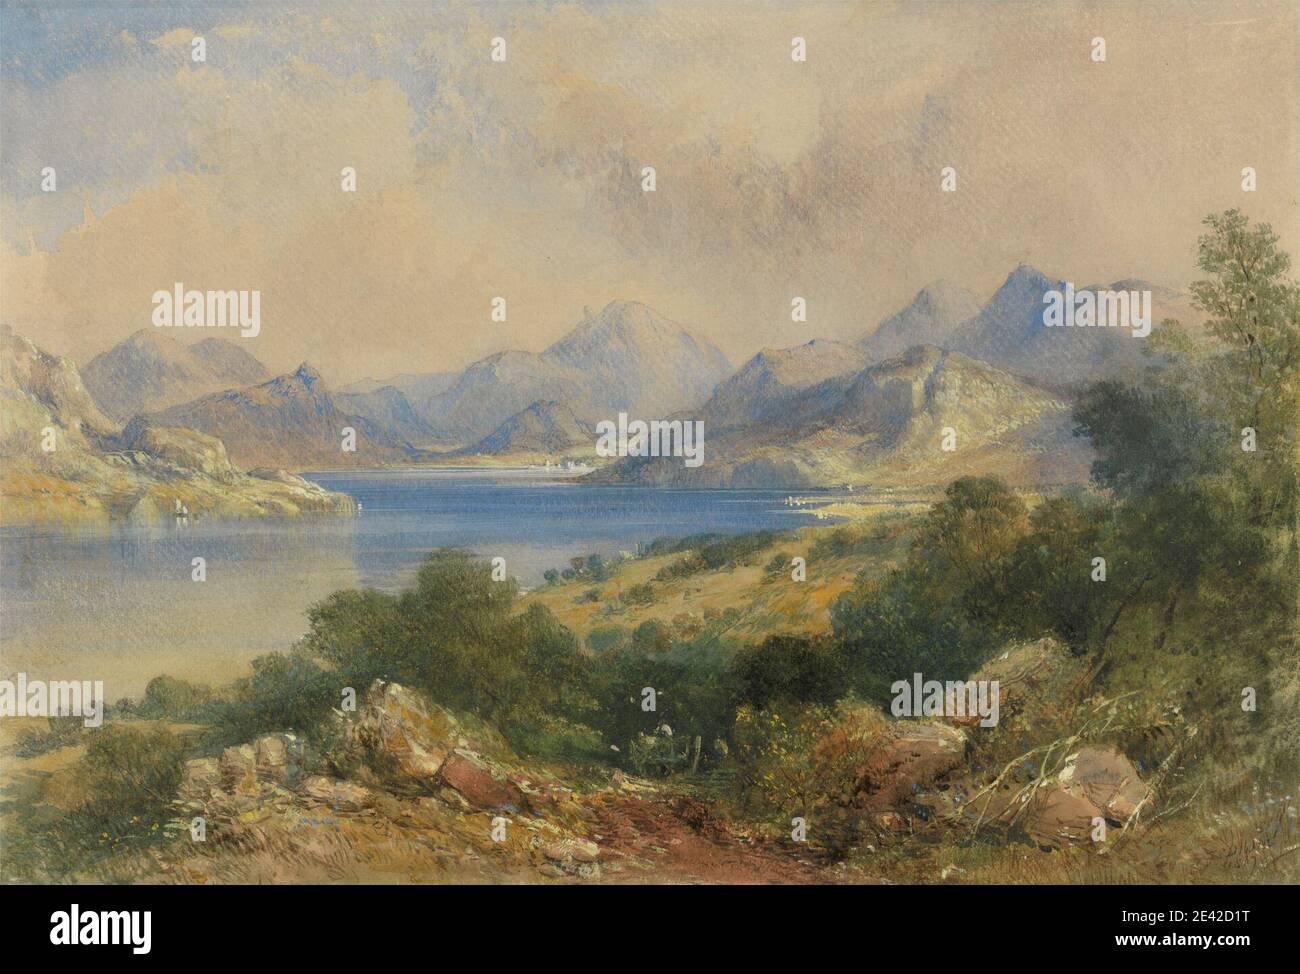 Thomas Colman Dibdin, 1810â–1893, inglese, paesaggio montano con un lago, 1867. Acquerello, con penna, in inchiostro marrone, gouache e grafite su carta spessa, ruvida, beige, wove. Foto Stock